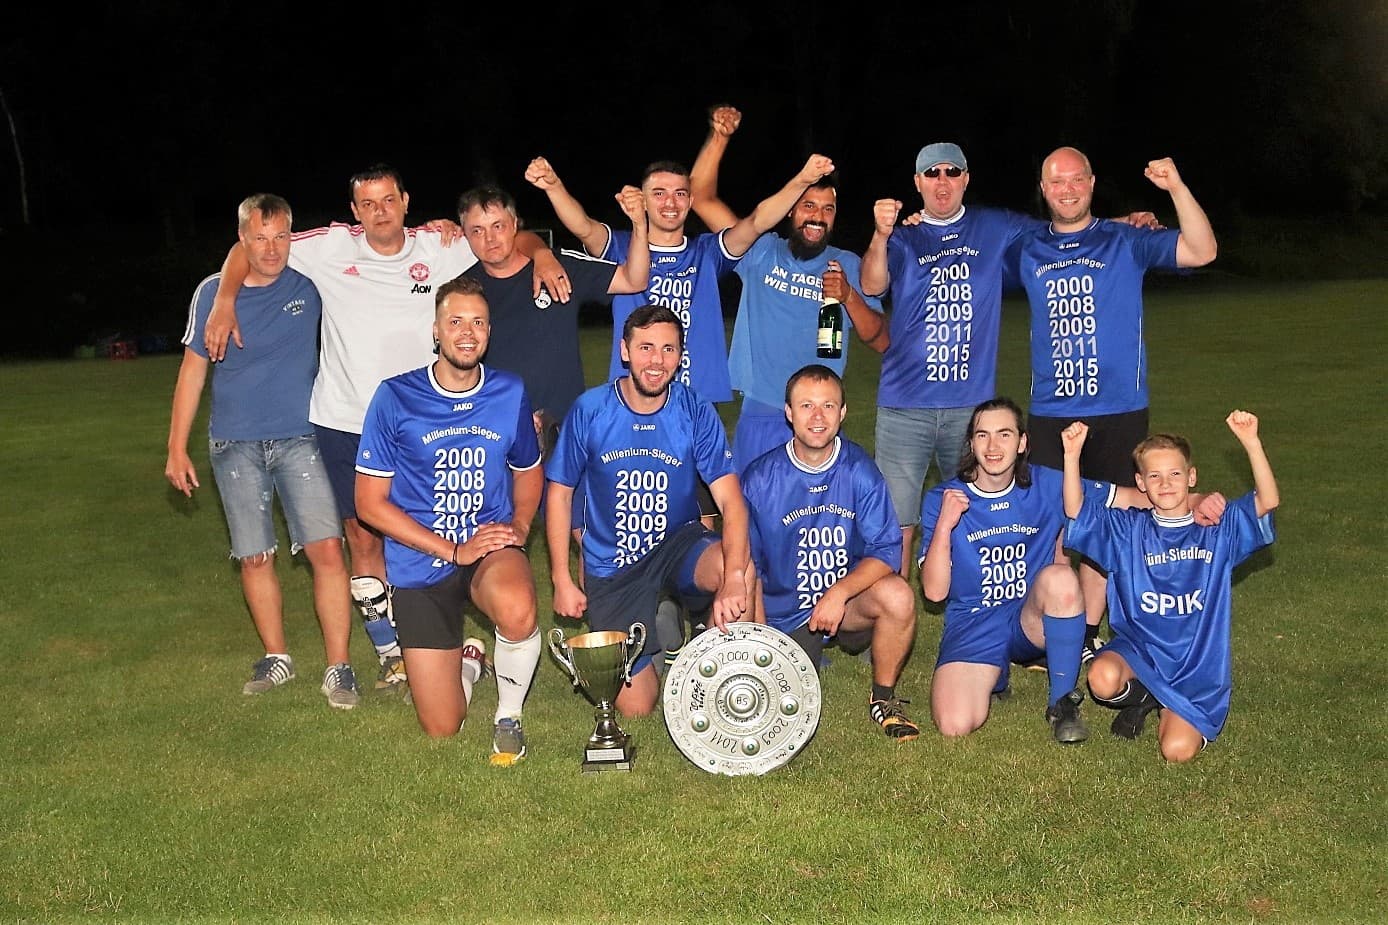 Bünte-Siedlung Gewinner der Straßenmeisterschaft im Rahmen der 37. Steinhorster Straßenmeisterschaft